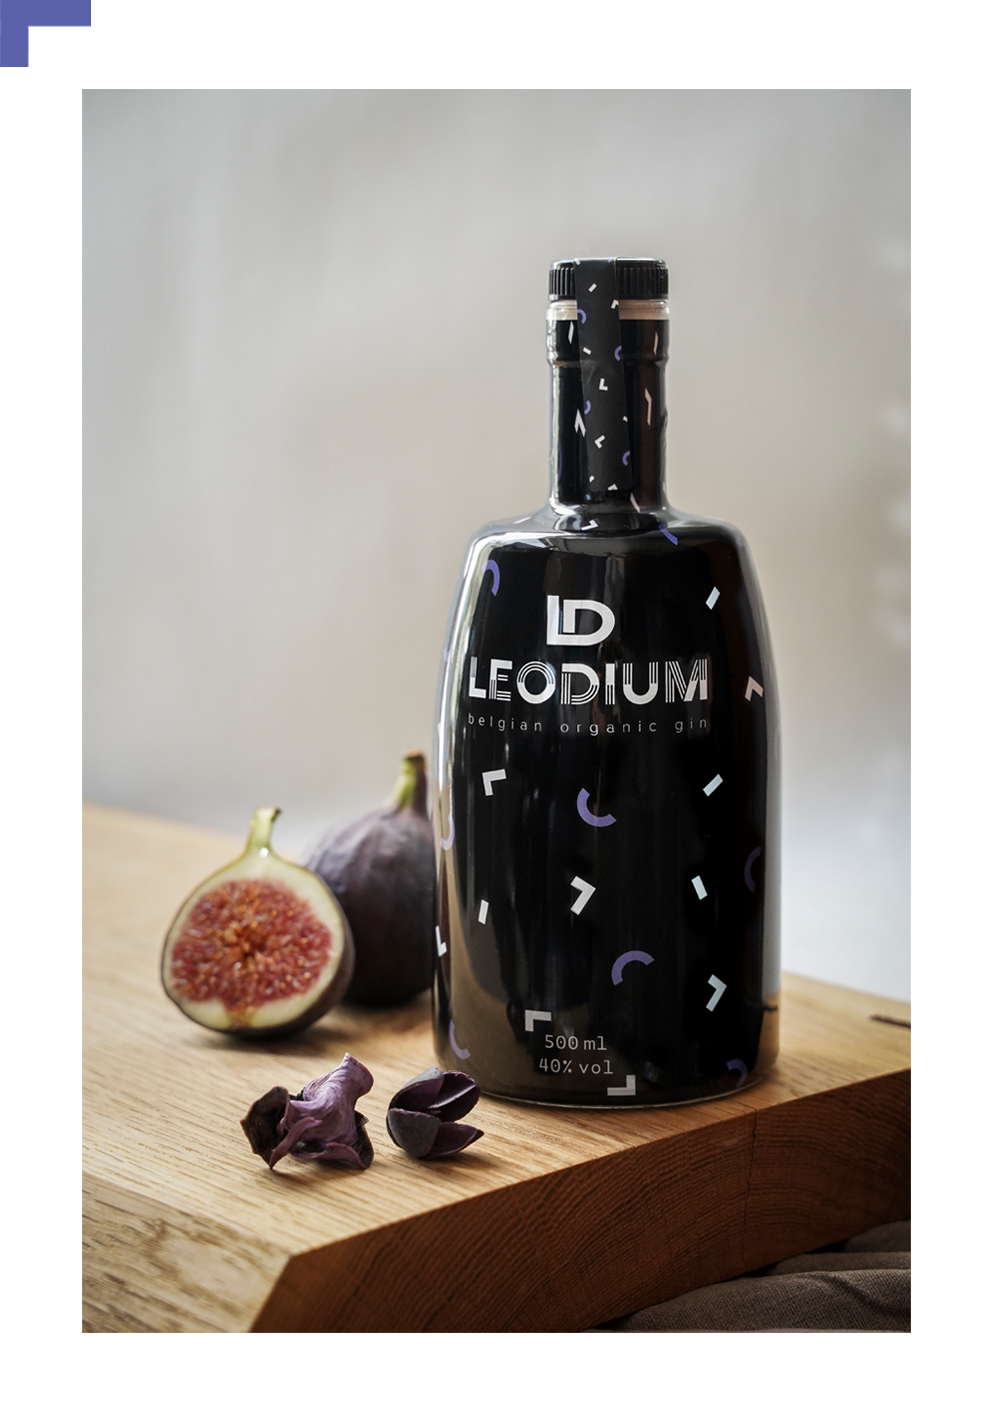 Leodium Belgium organic gin 0.5l. - 40% vol.